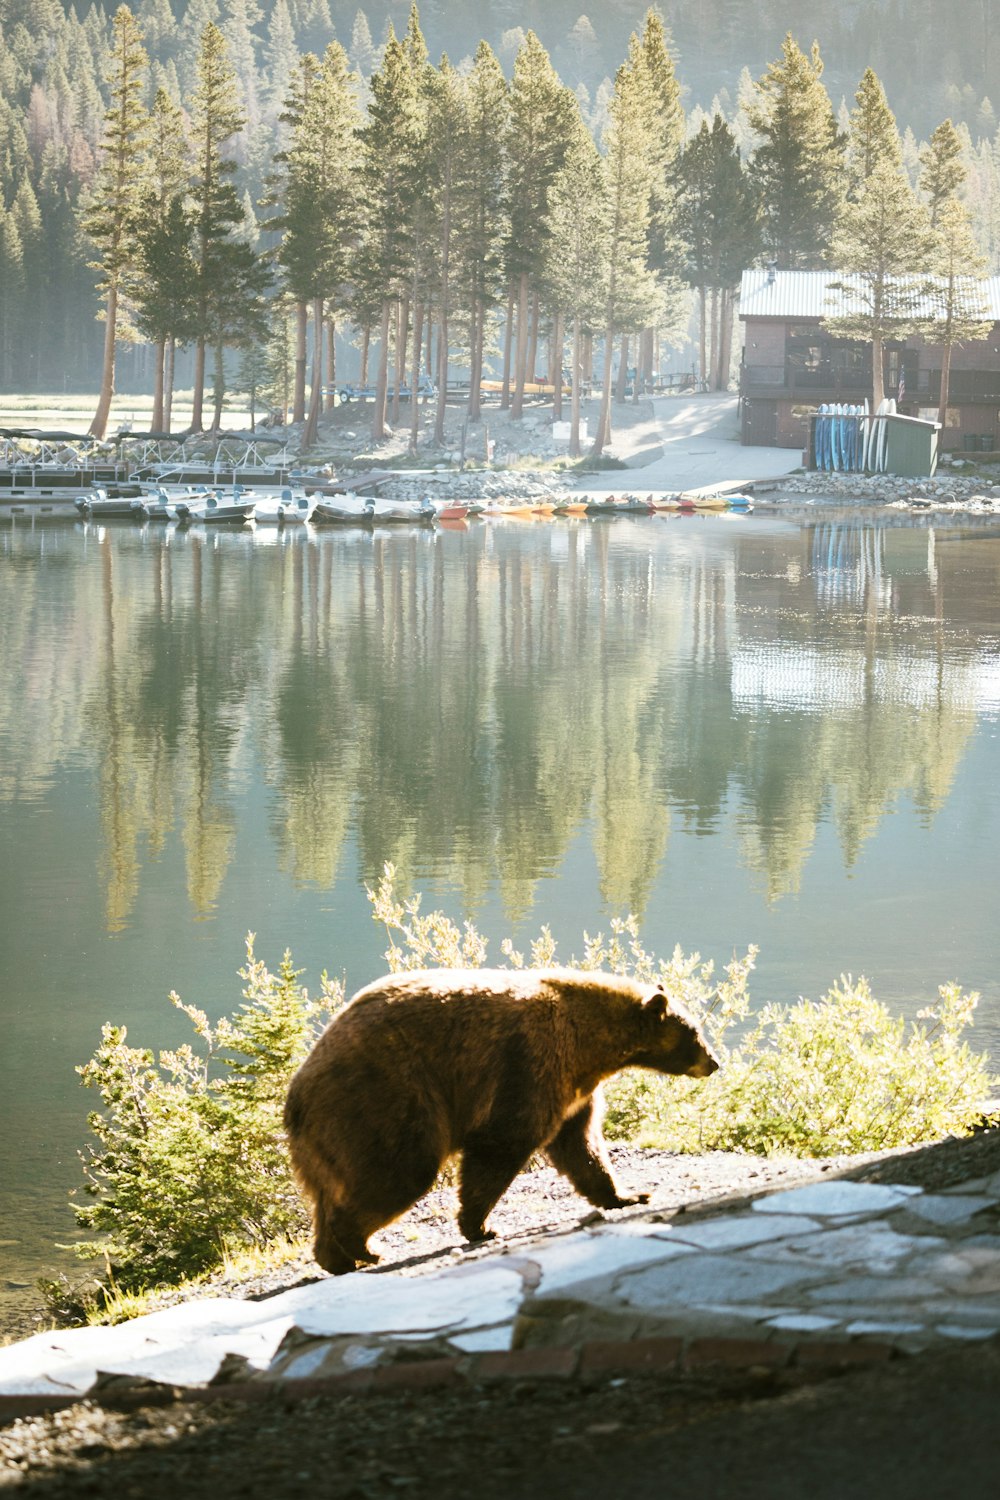 a bear walking on a rock next to a lake